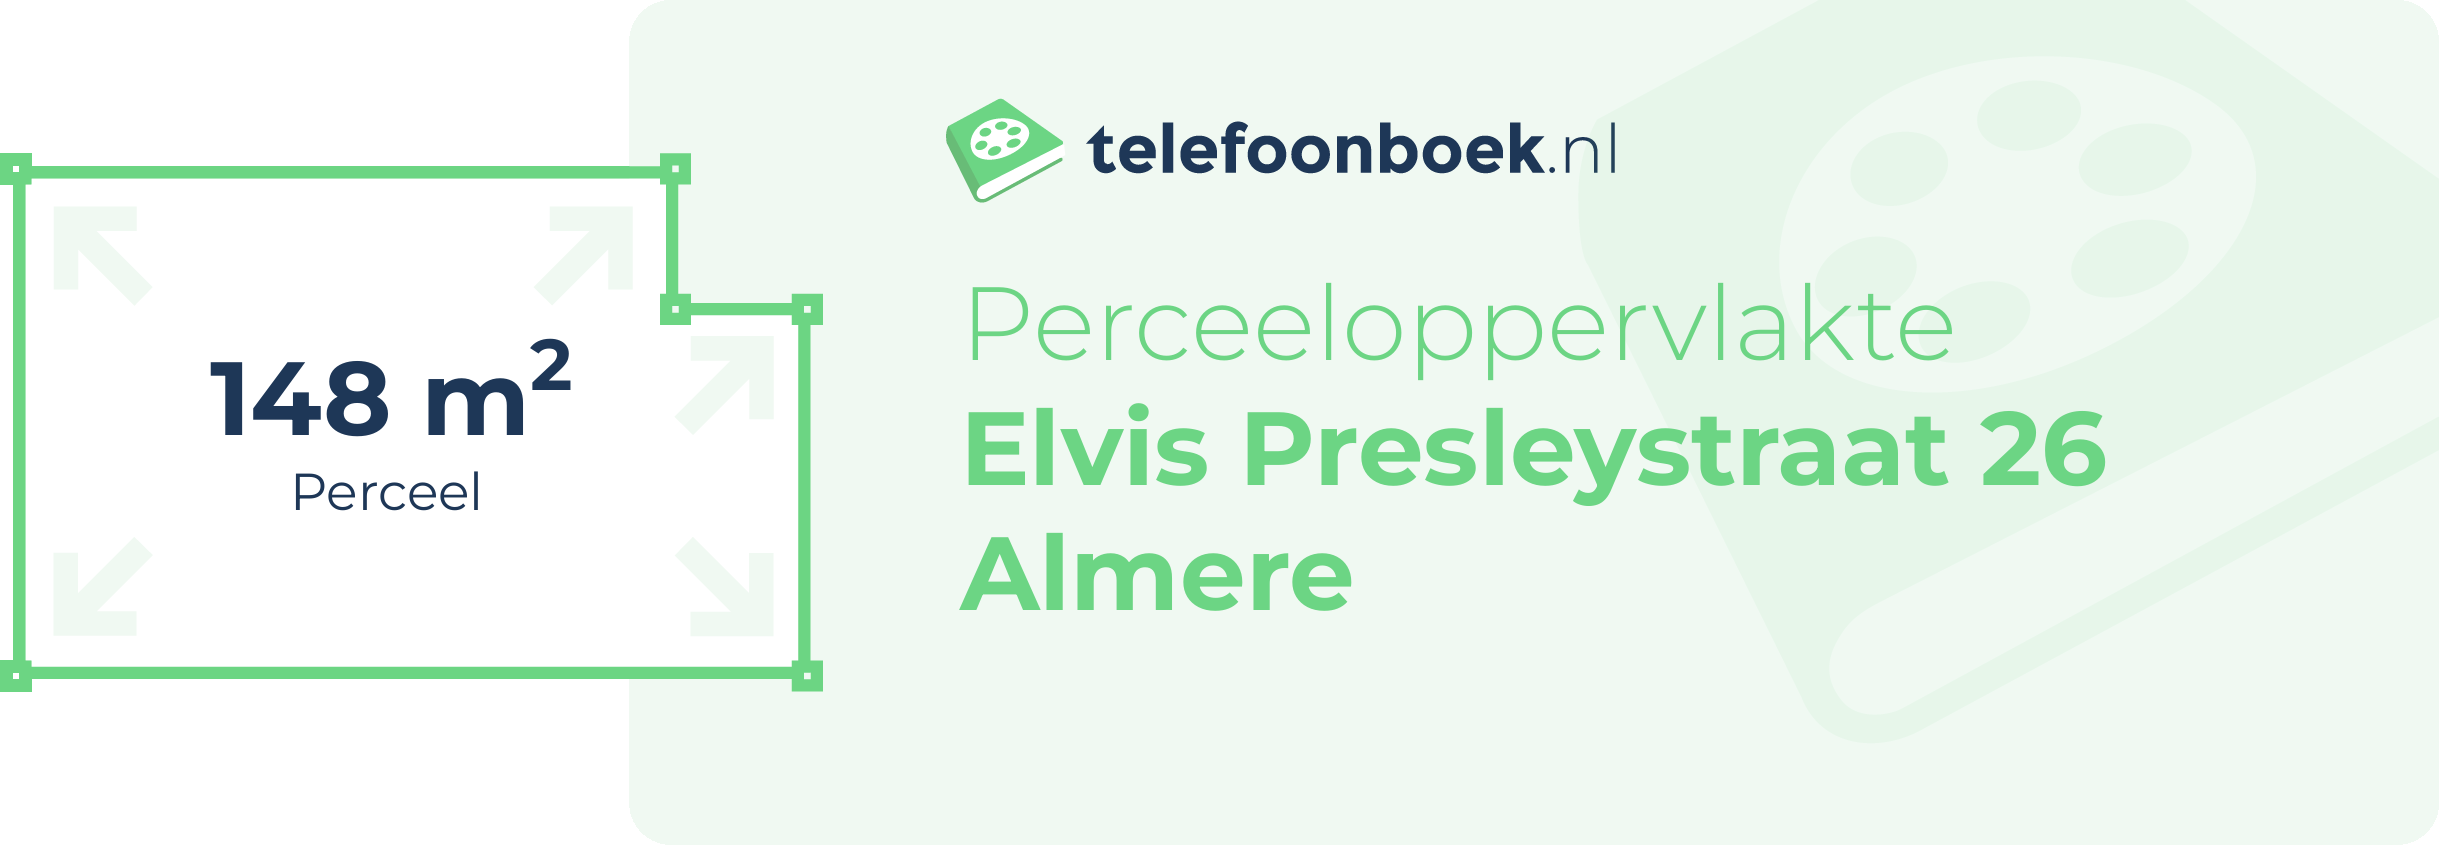 Perceeloppervlakte Elvis Presleystraat 26 Almere